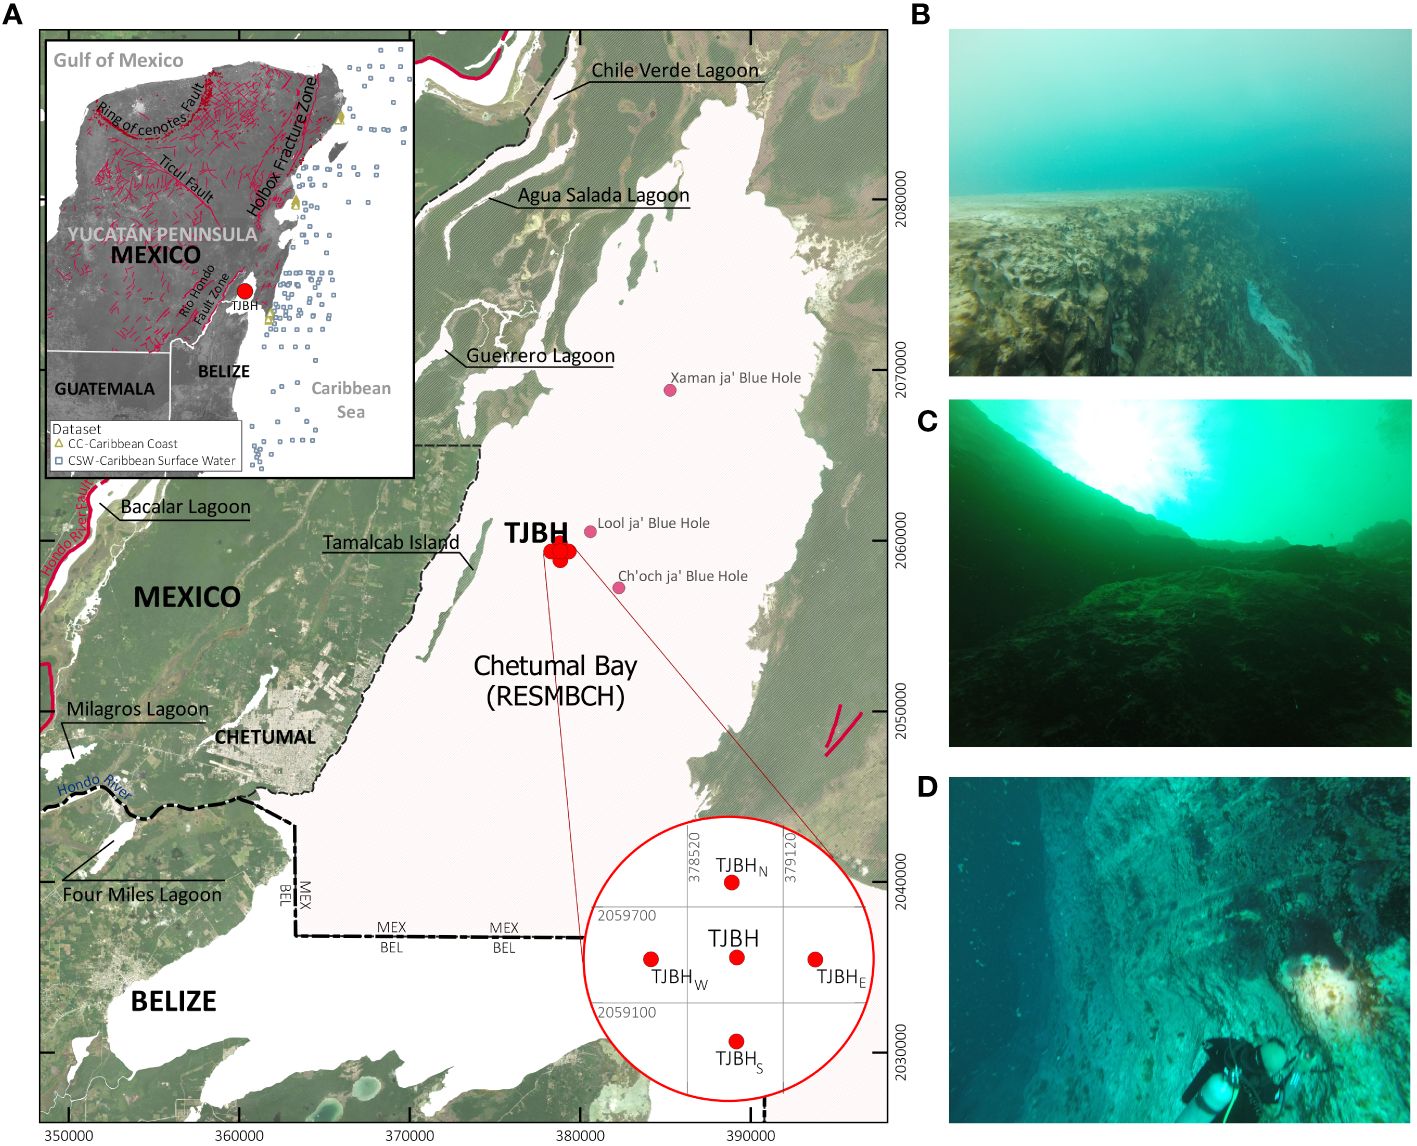 Карта, показывающая расположение голубой дыры Таам Джа, и подводные фотографии голубой дыры.